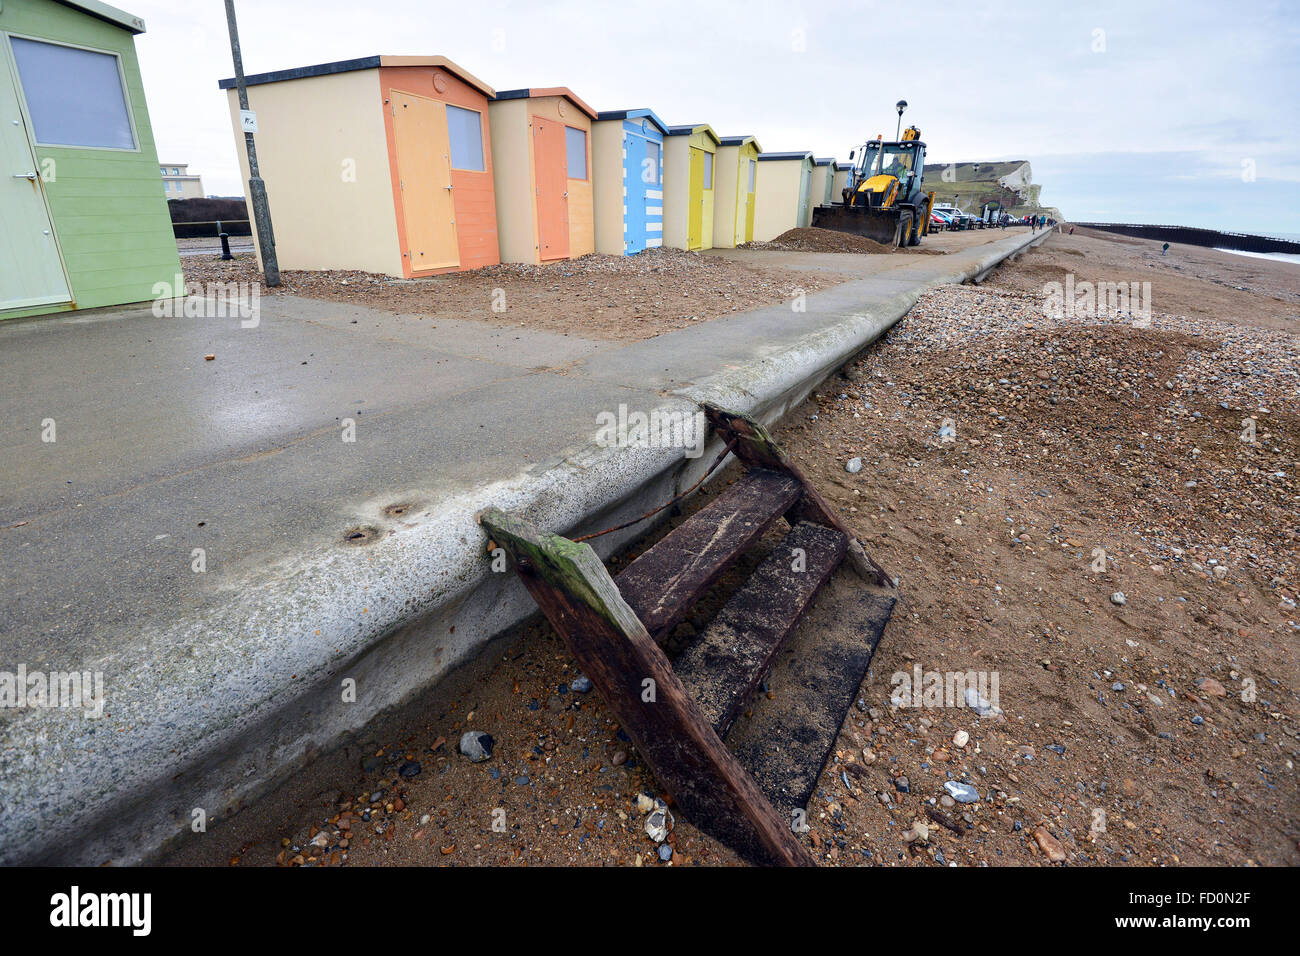 Seaford beach, East Sussex, Regno Unito. mostra severe erosione costiera dopo le tempeste invernali Foto Stock